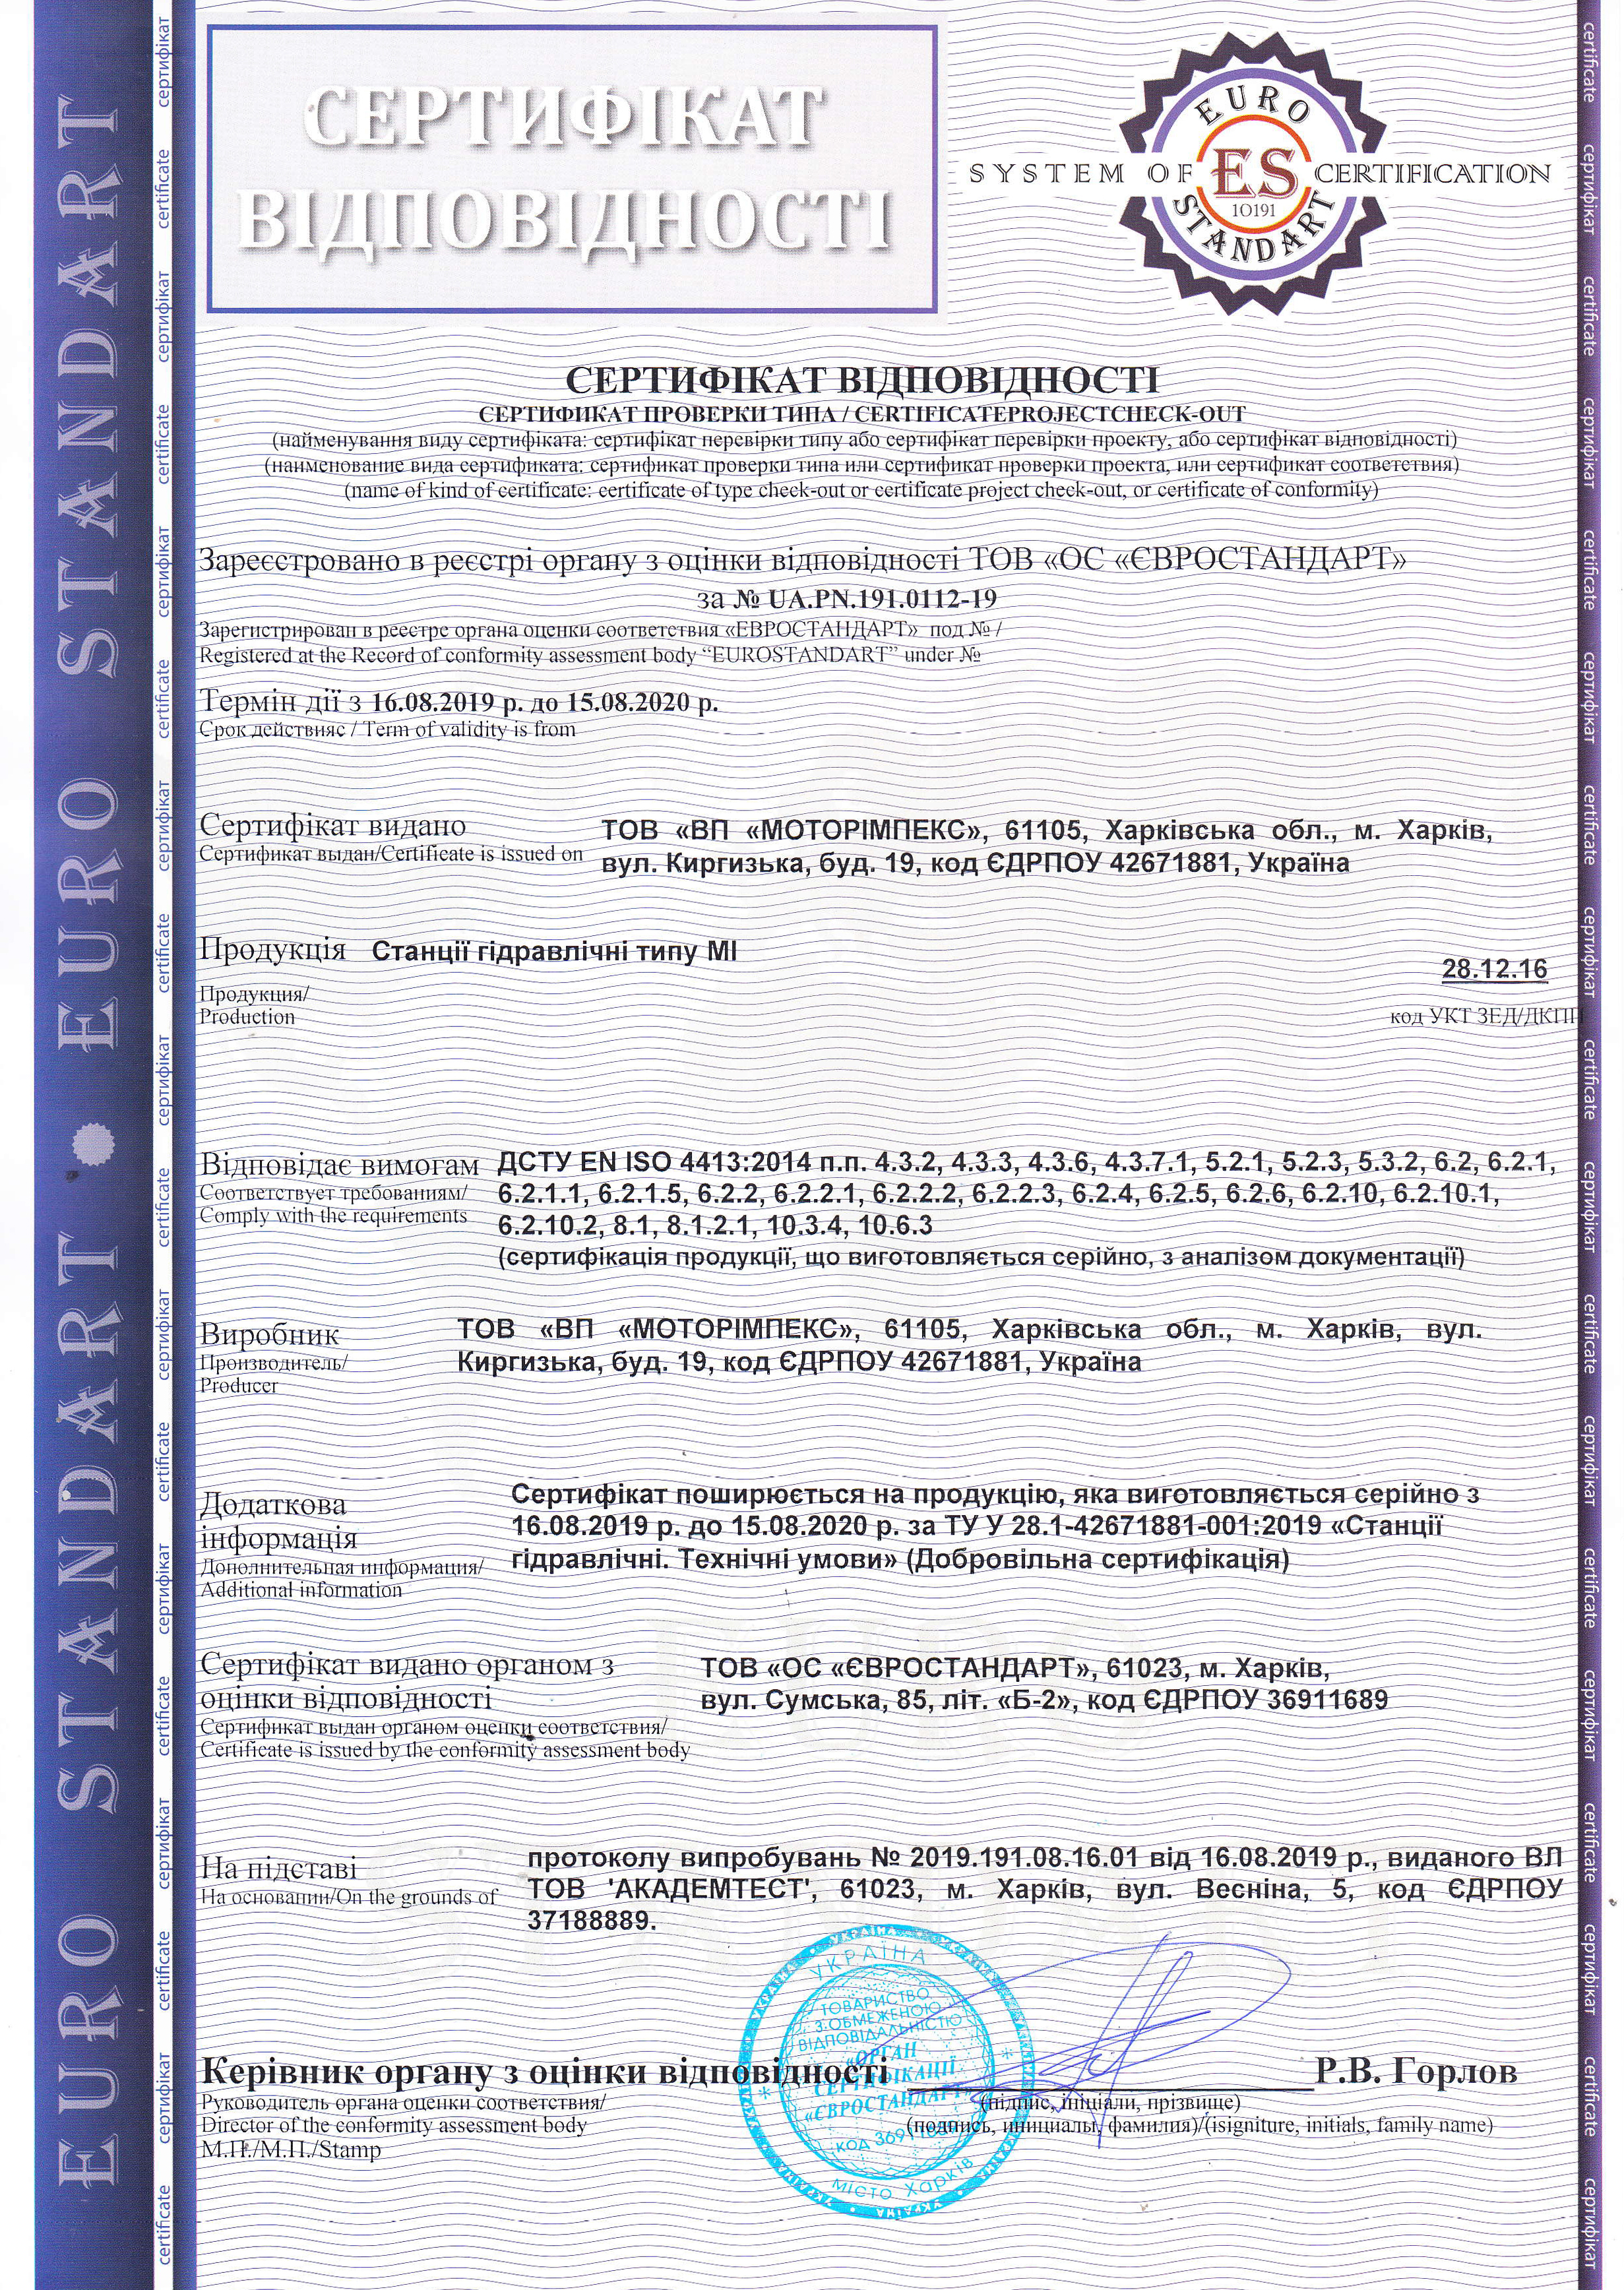 Маслостанции типа МІ производства ПП «Моторимпекс» отвечают требованиям ДСТУ EN ISO 4413:2014